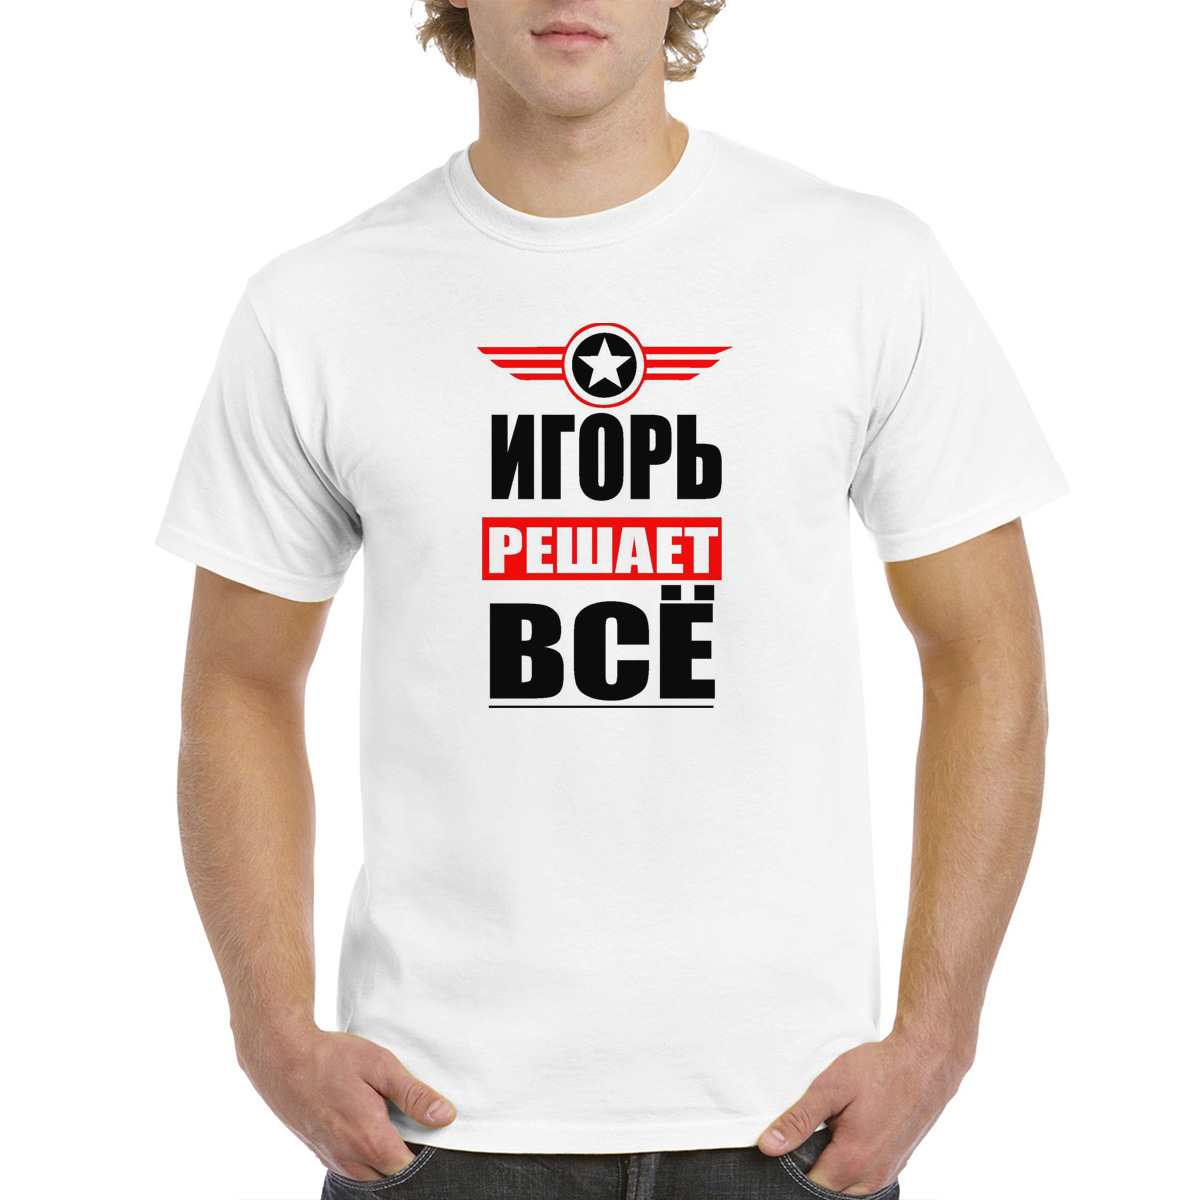 Белая мужская футболка CoolPodarok 46M04428 размера 46 по российской системе.